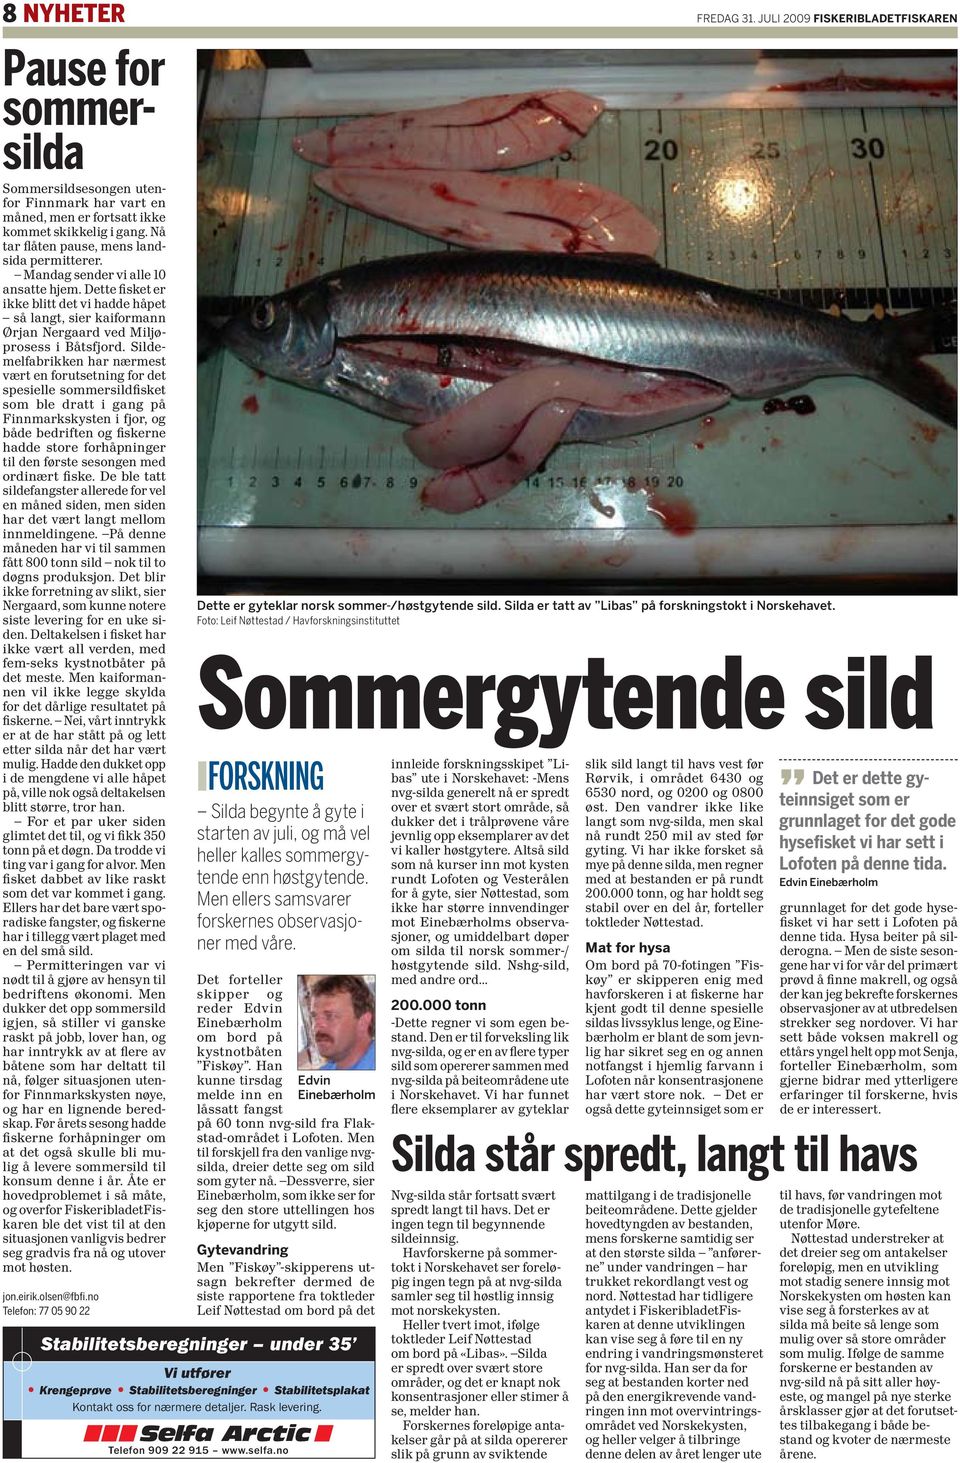 Dette fisket er ikke blitt det vi hadde håpet så langt, sier kaiformann Ørjan Nergaard ved Miljøprosess i Båtsfjord.